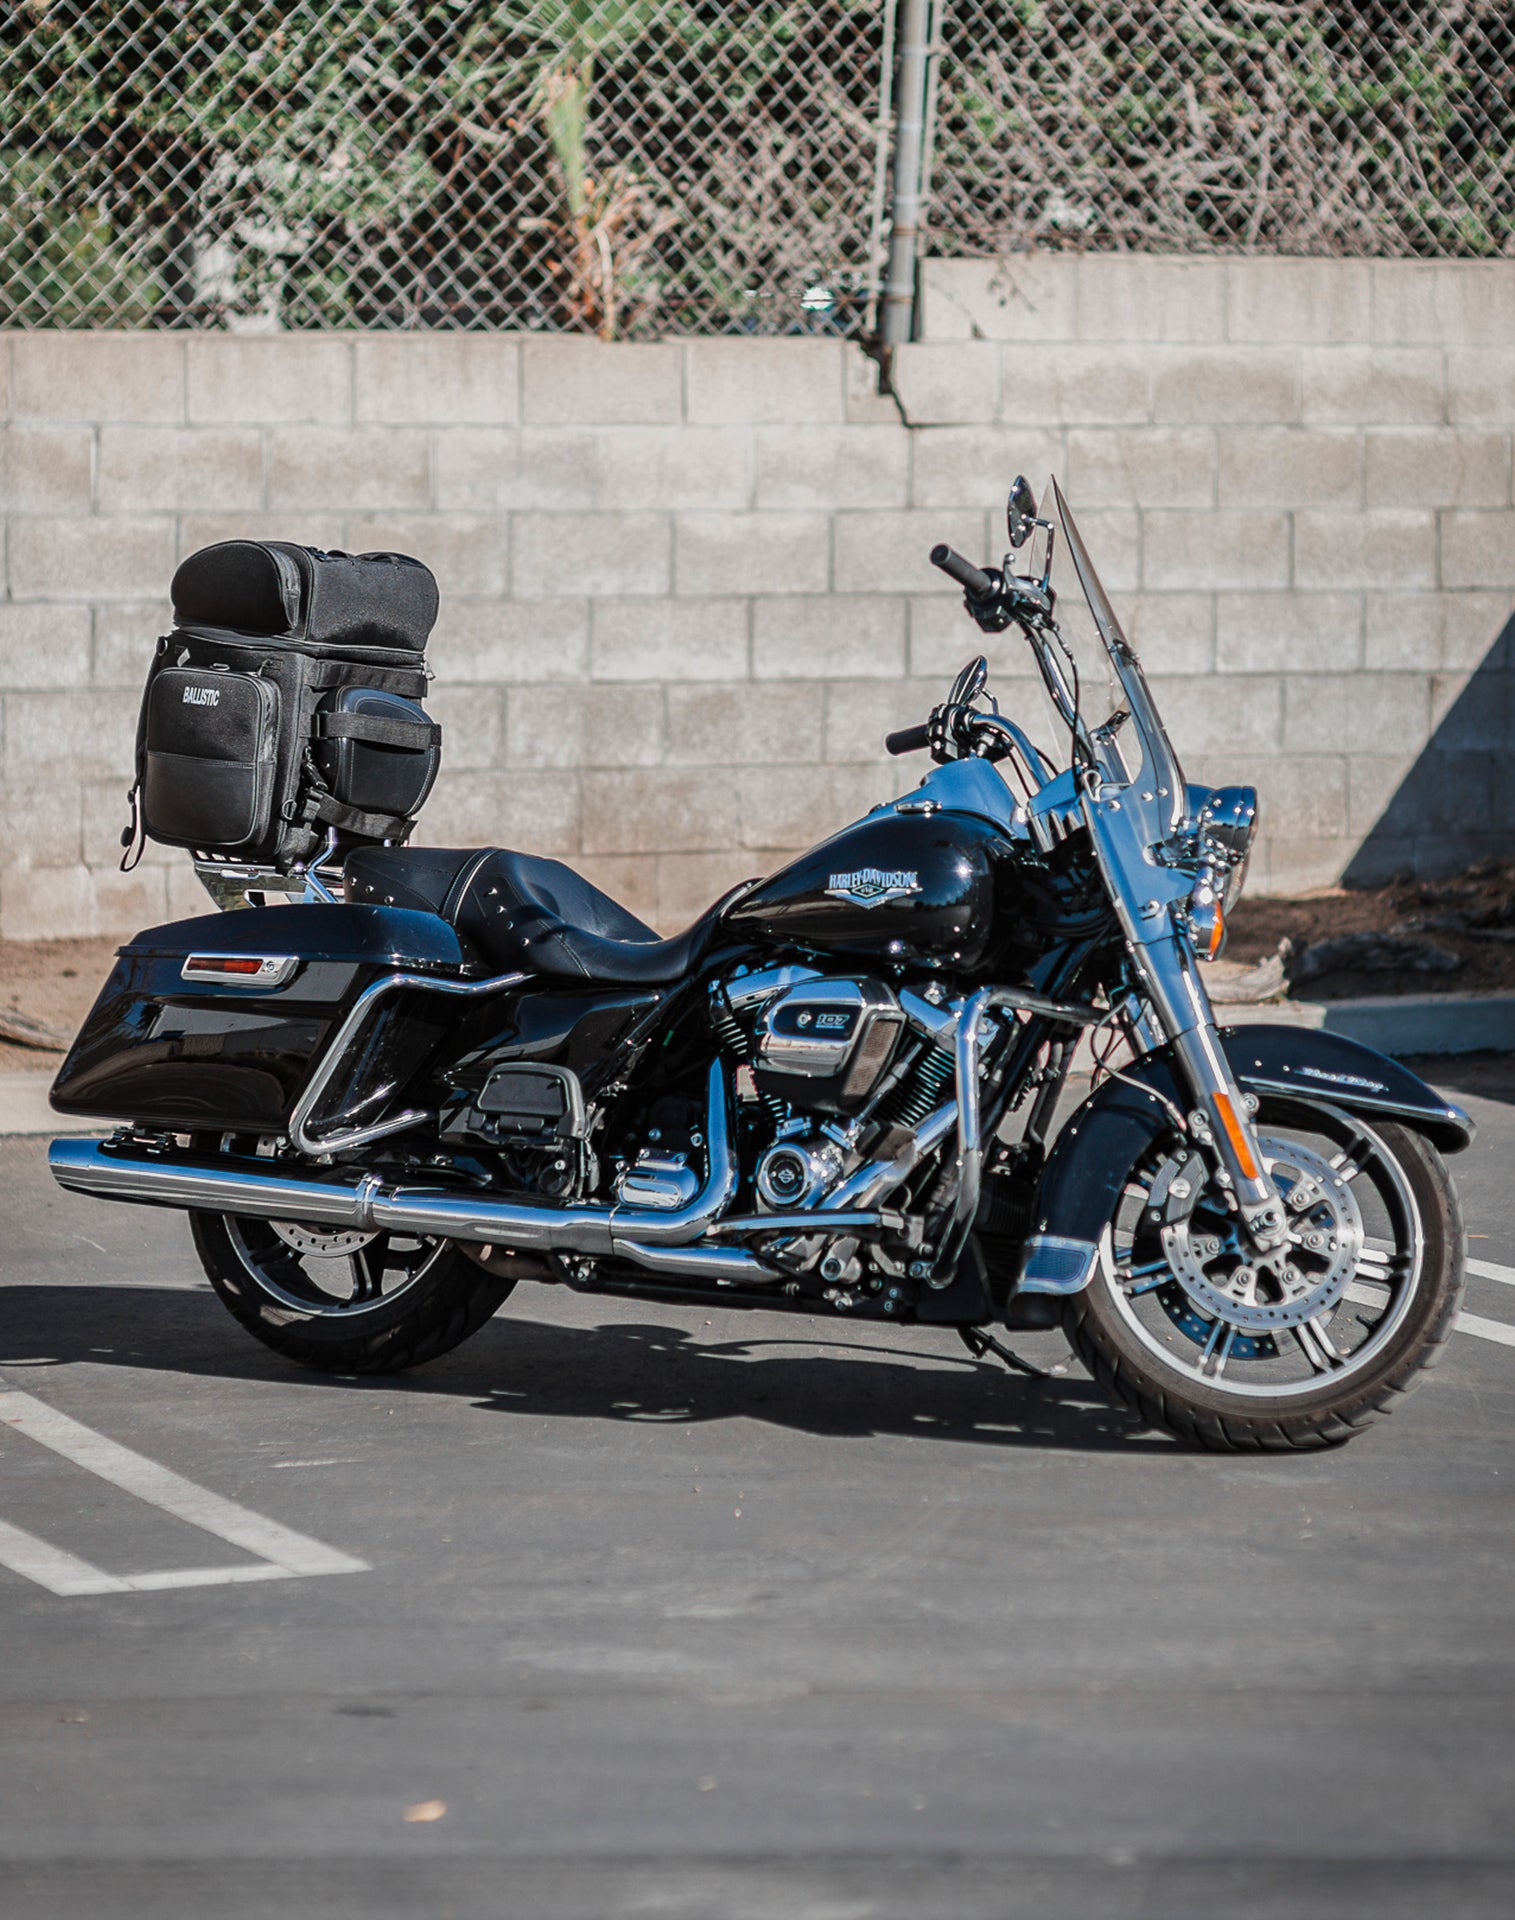 57L - Voyage Premium XL Indian Motorcycle Sissy Bar Bag